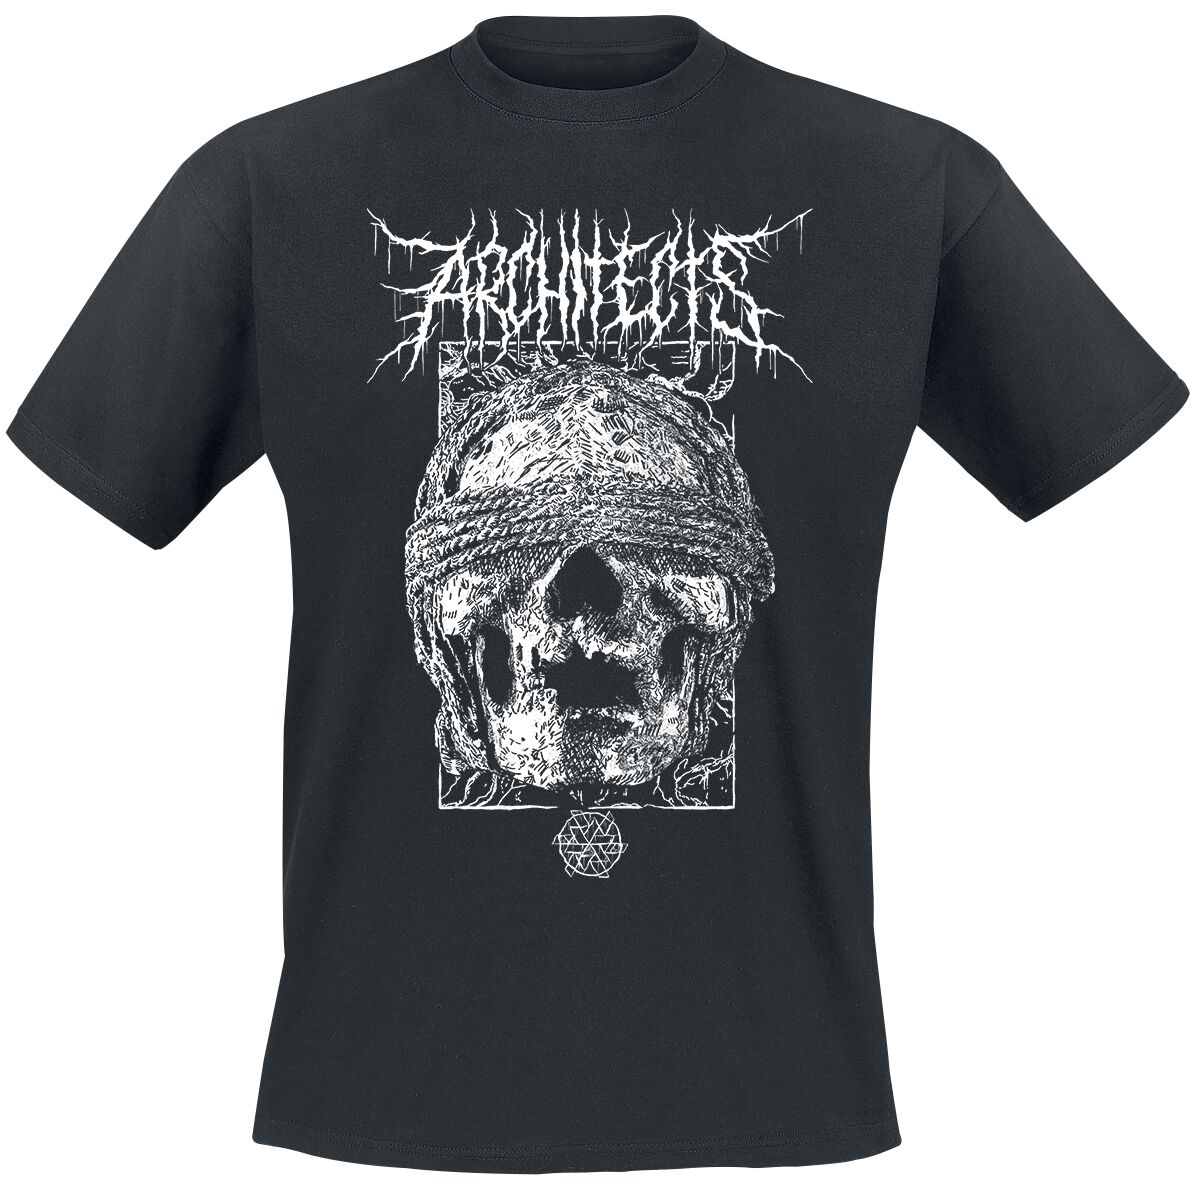 Architects T-Shirt - Blindfolded Skull - S bis XXL - für Männer - Größe M - schwarz  - Lizenziertes Merchandise!